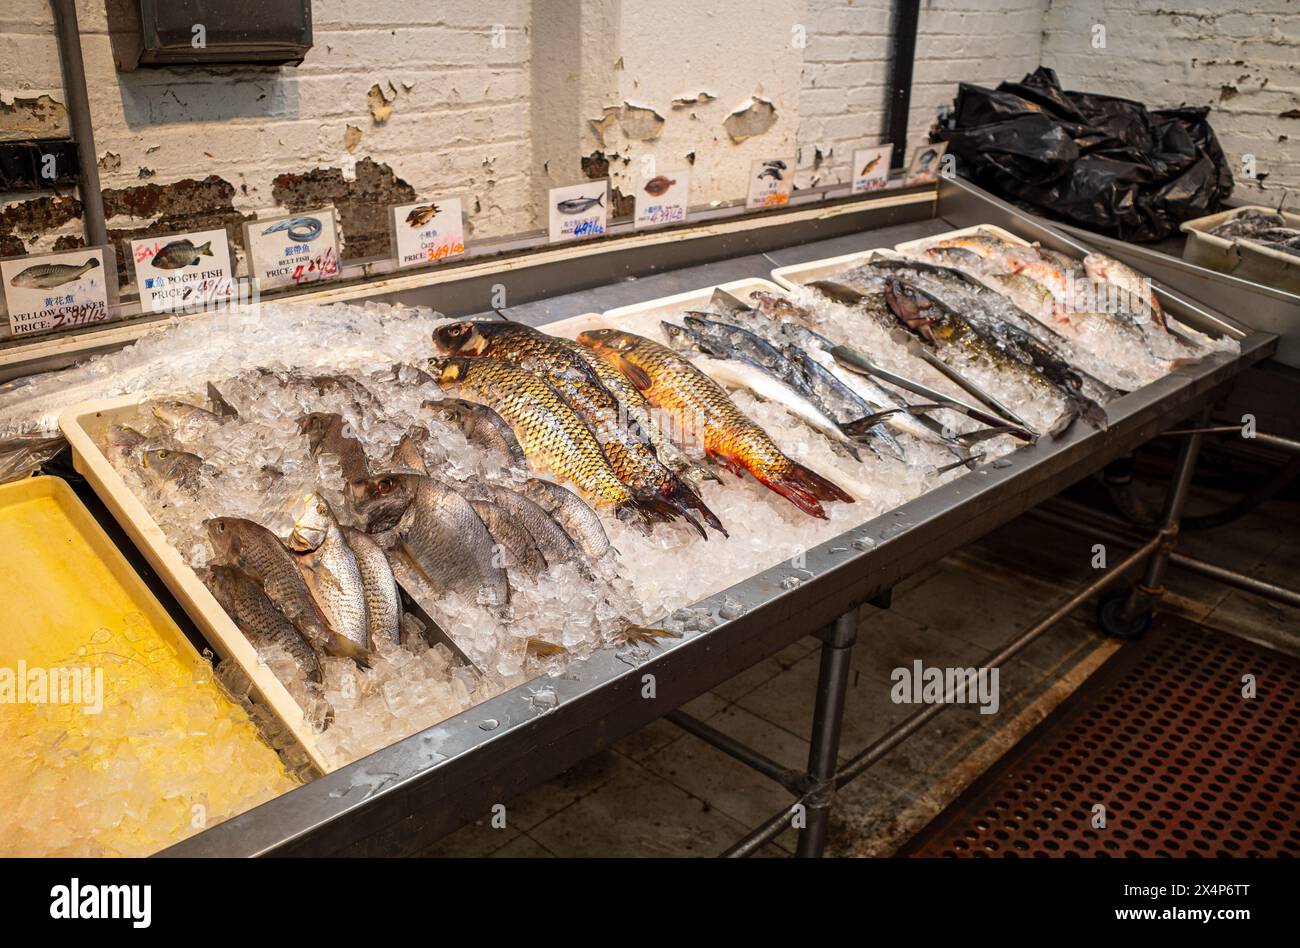 Un vivace spettacolo di pesci splende su un letto di ghiaccio frantumato, annidato in una stalla intempestiva di un mercato asiatico. Foto Stock